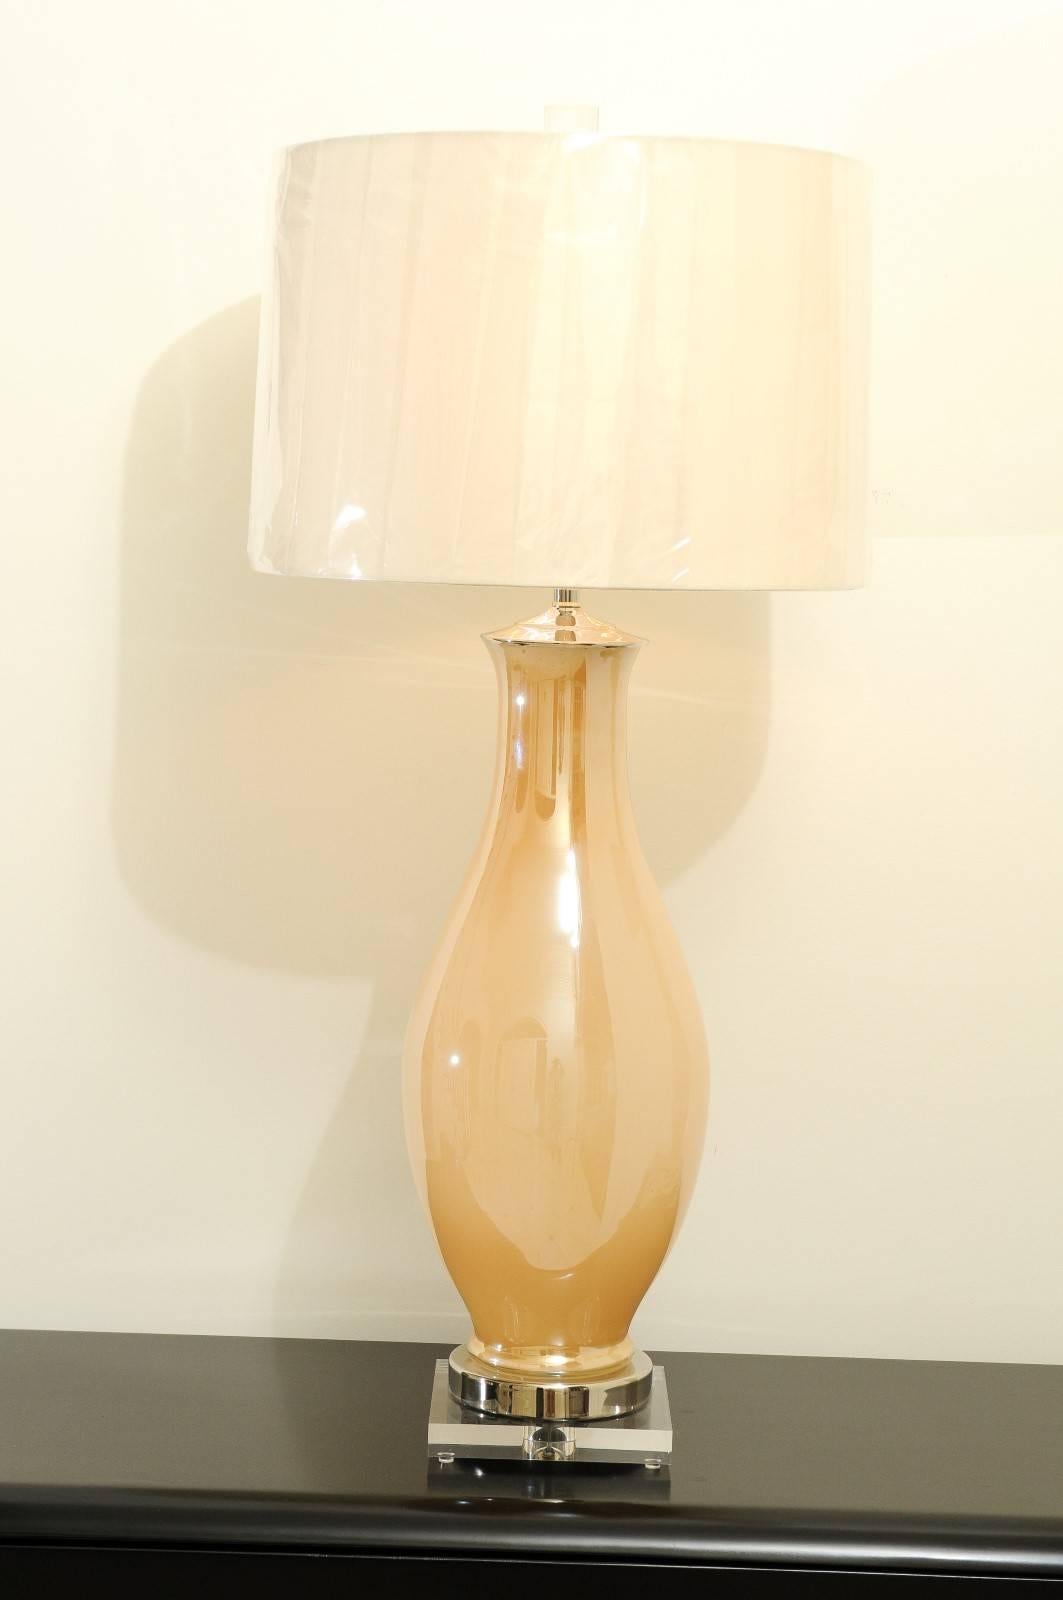 Une superbe paire de lampes soufflées de Murano, vers 1960. Forme et échelle exceptionnelles. La peinture inversée donne une belle qualité perlée et iridescente. Un artisanat sublime. Ces pièces intemporelles s'intègrent parfaitement à tout